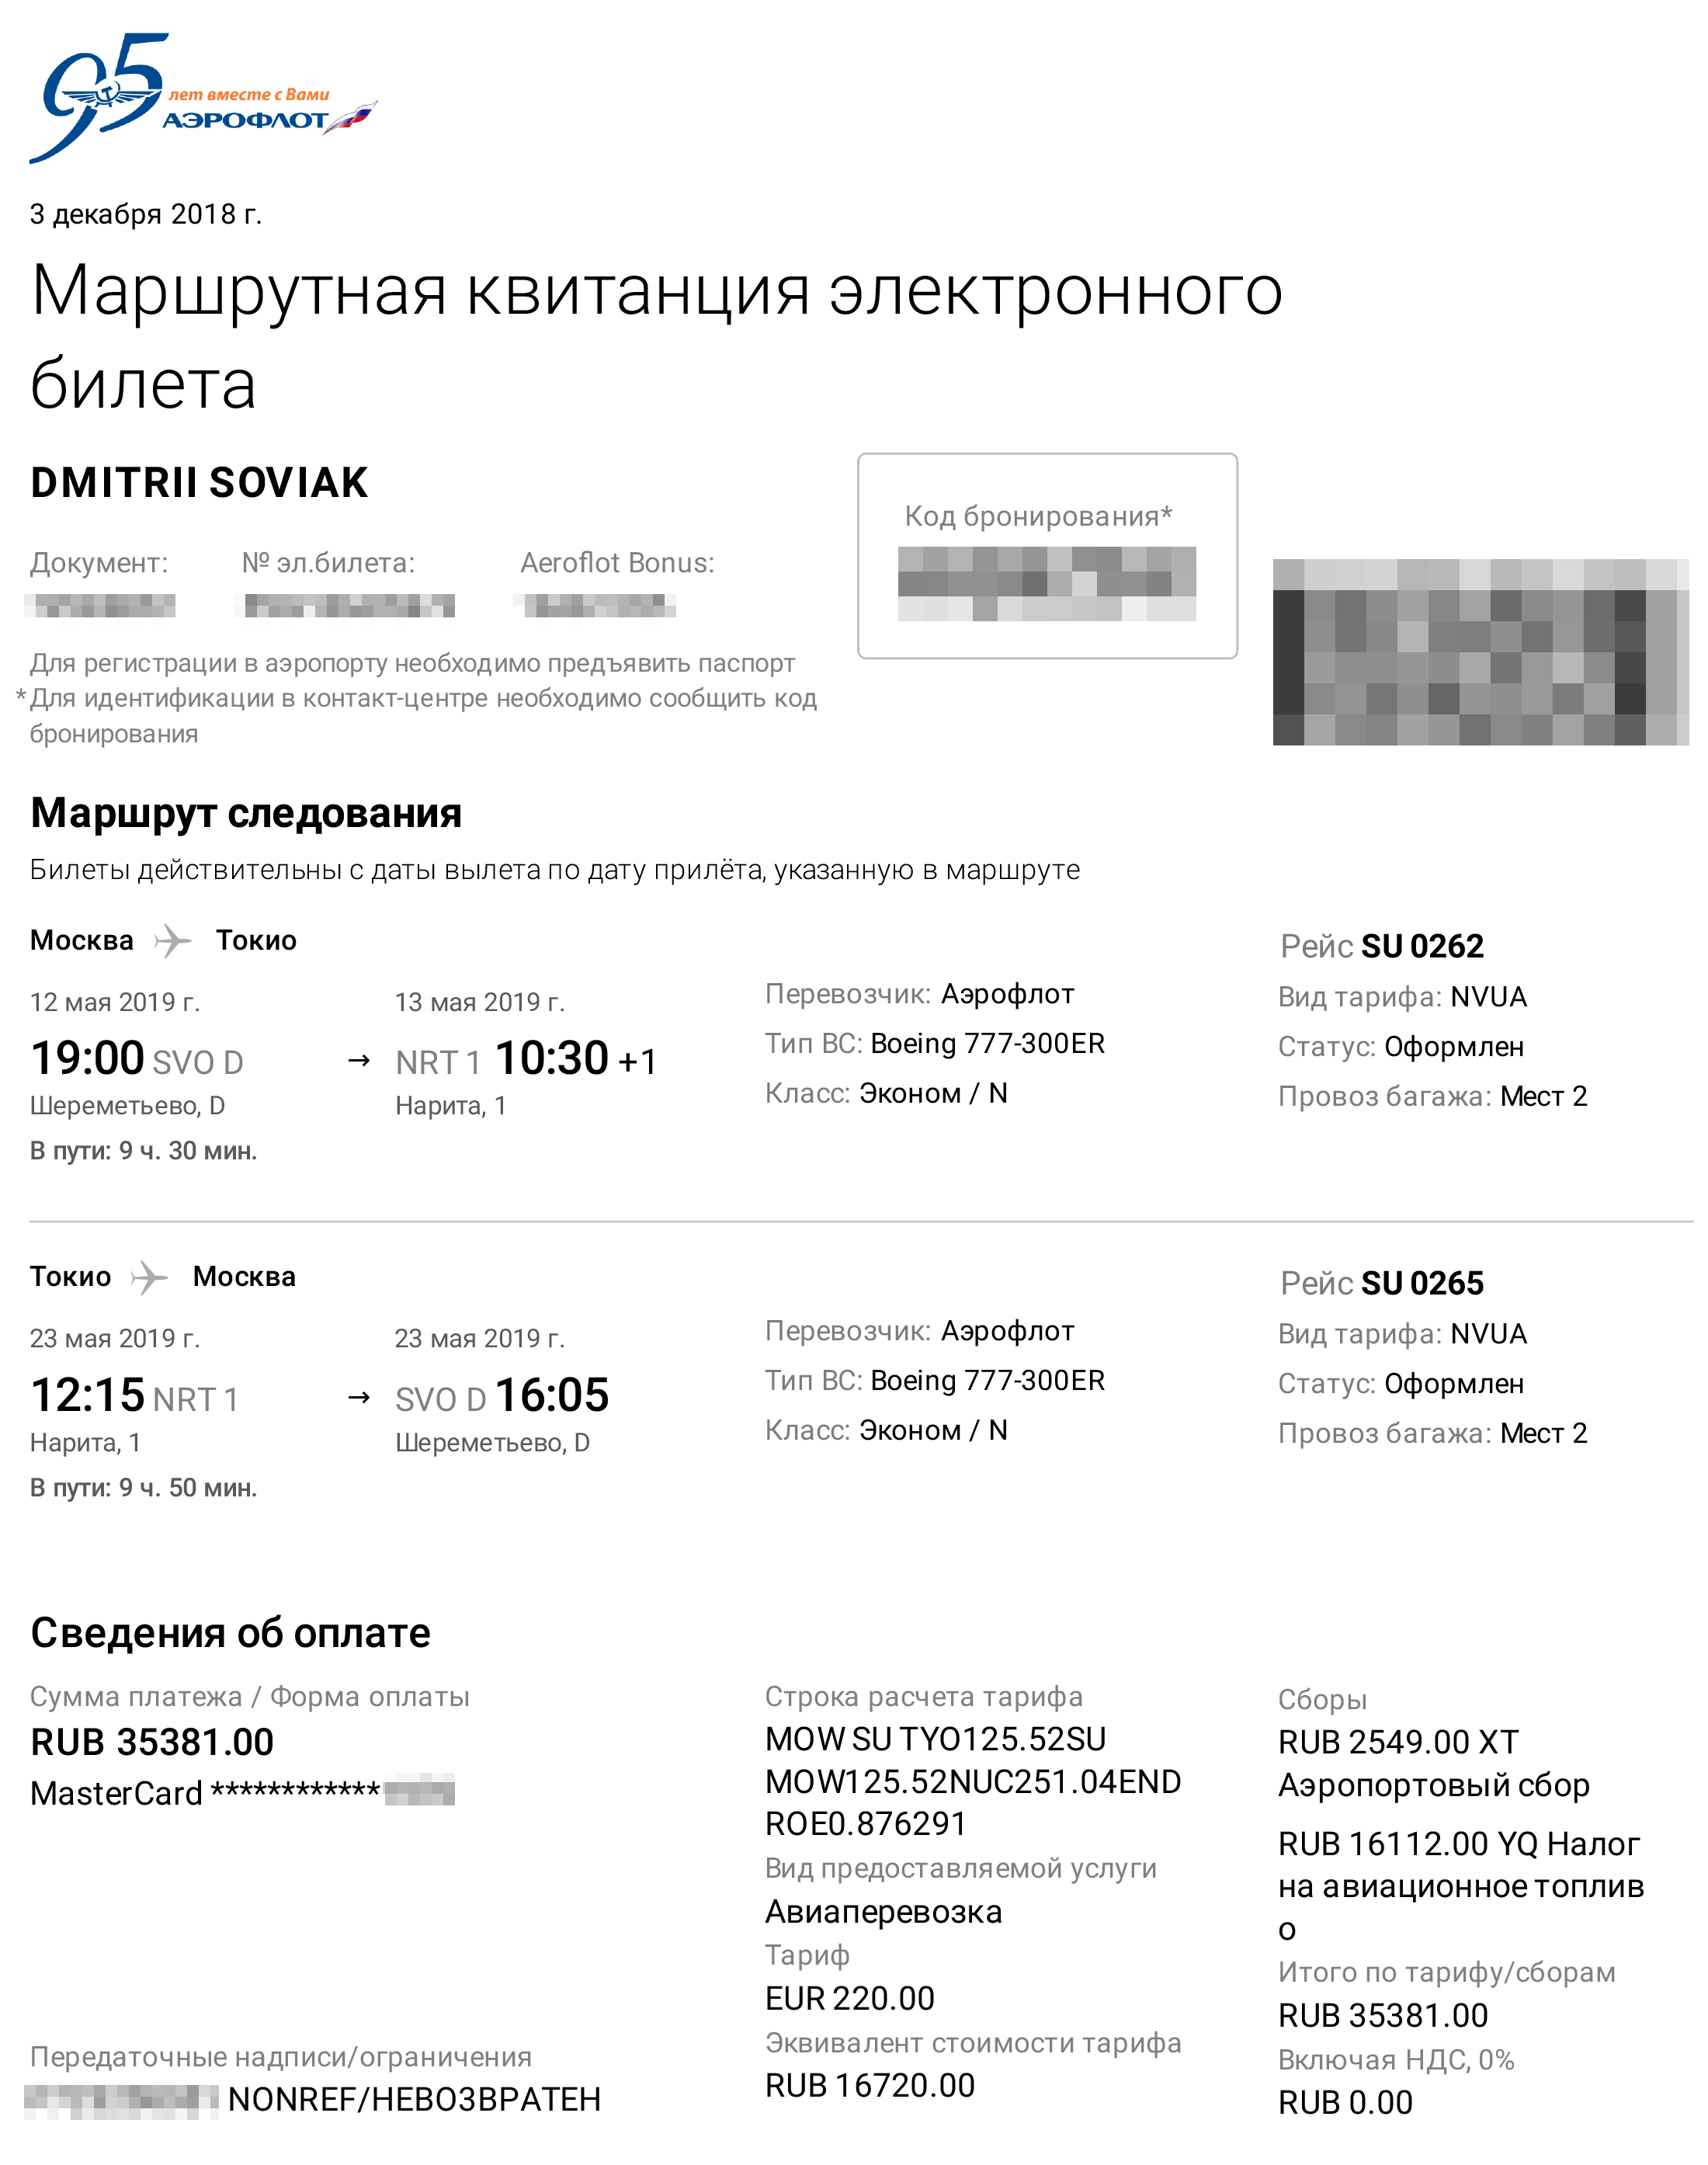 Мой билет по маршруту Москва — Токио — Москва